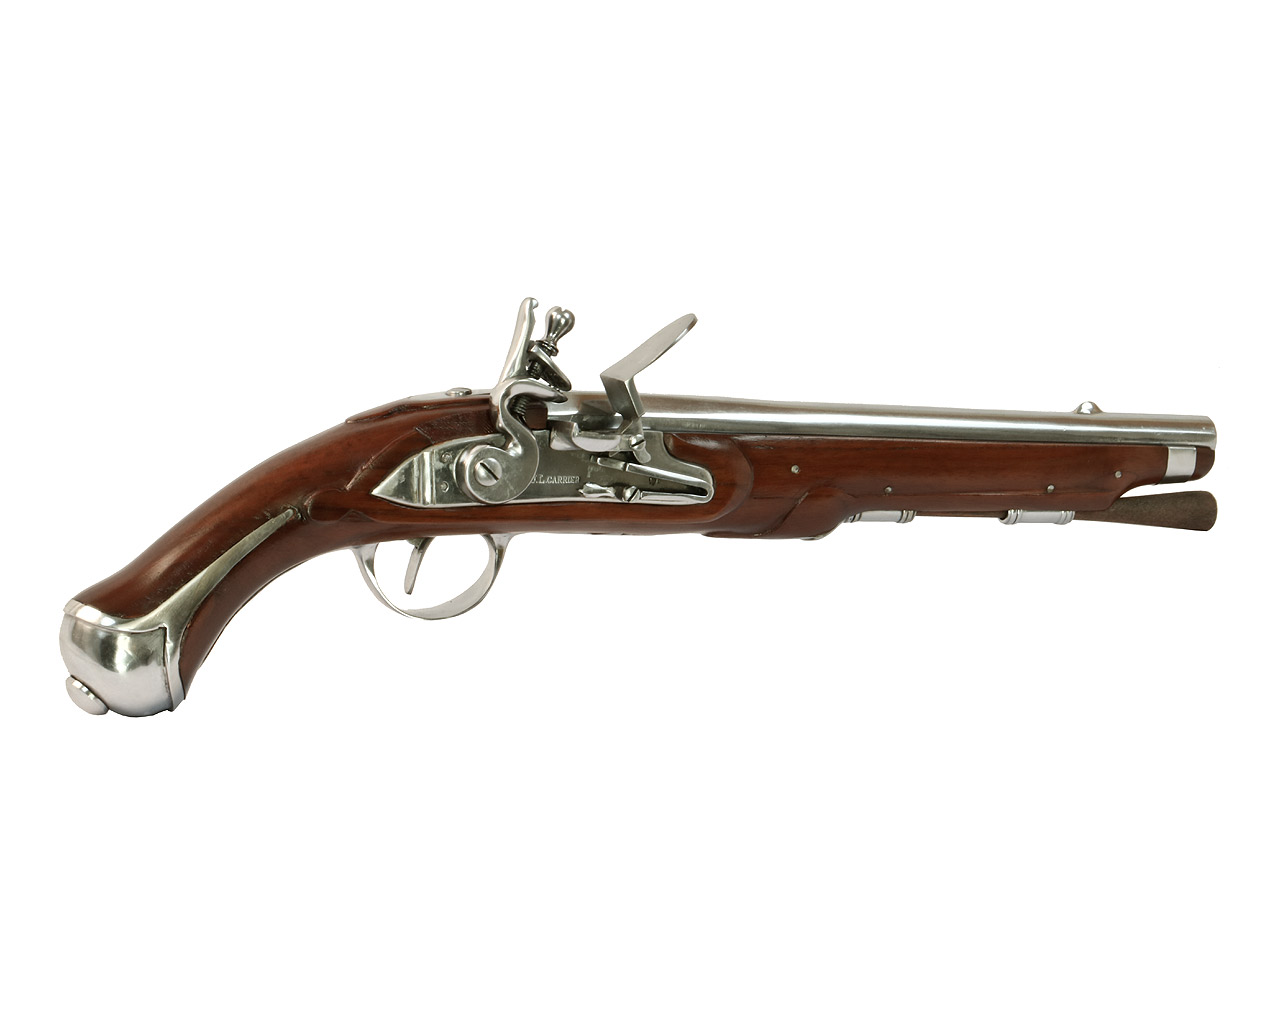 Vorderlader Steinschlosspistole French 1733 Flintlock Pistol, stahl, Kaliber .61 bzw. 15,5 mm (P18)